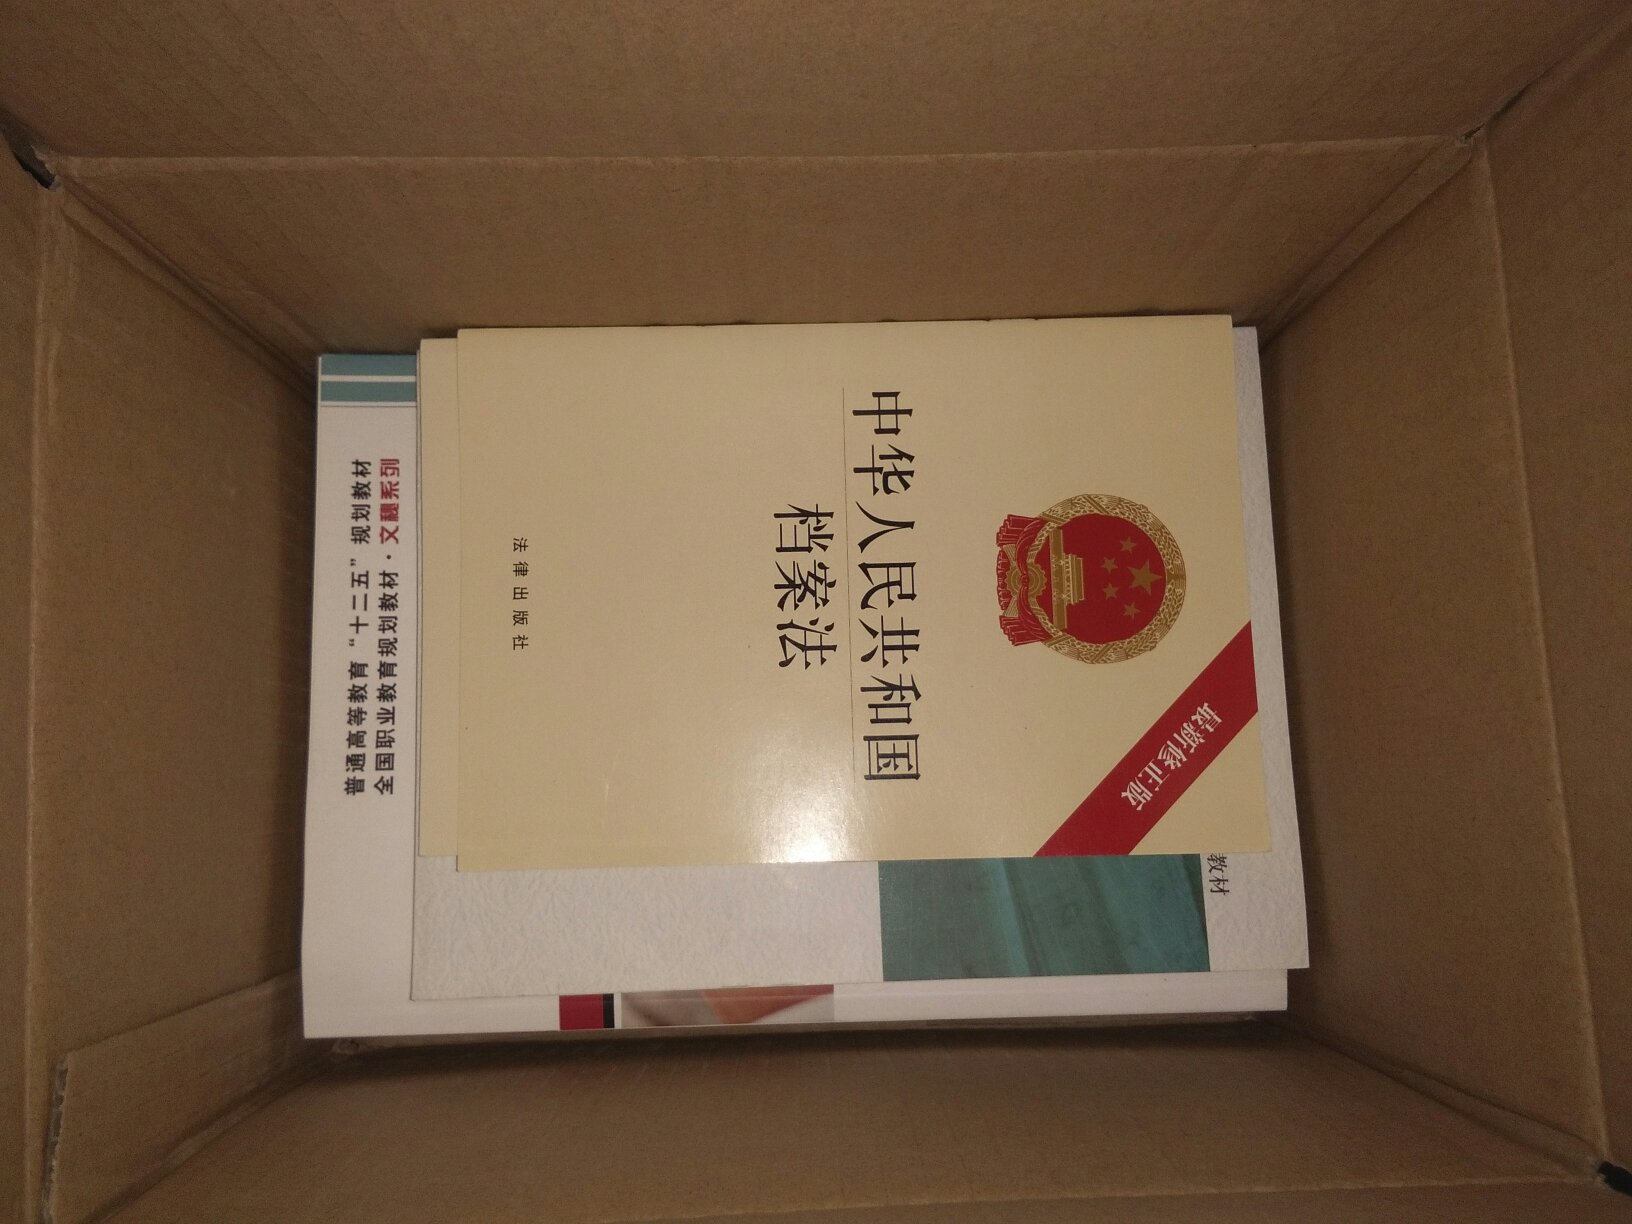 一共买了包括中华人民共和国档案法在内五本档案学方面的书籍。很实用。